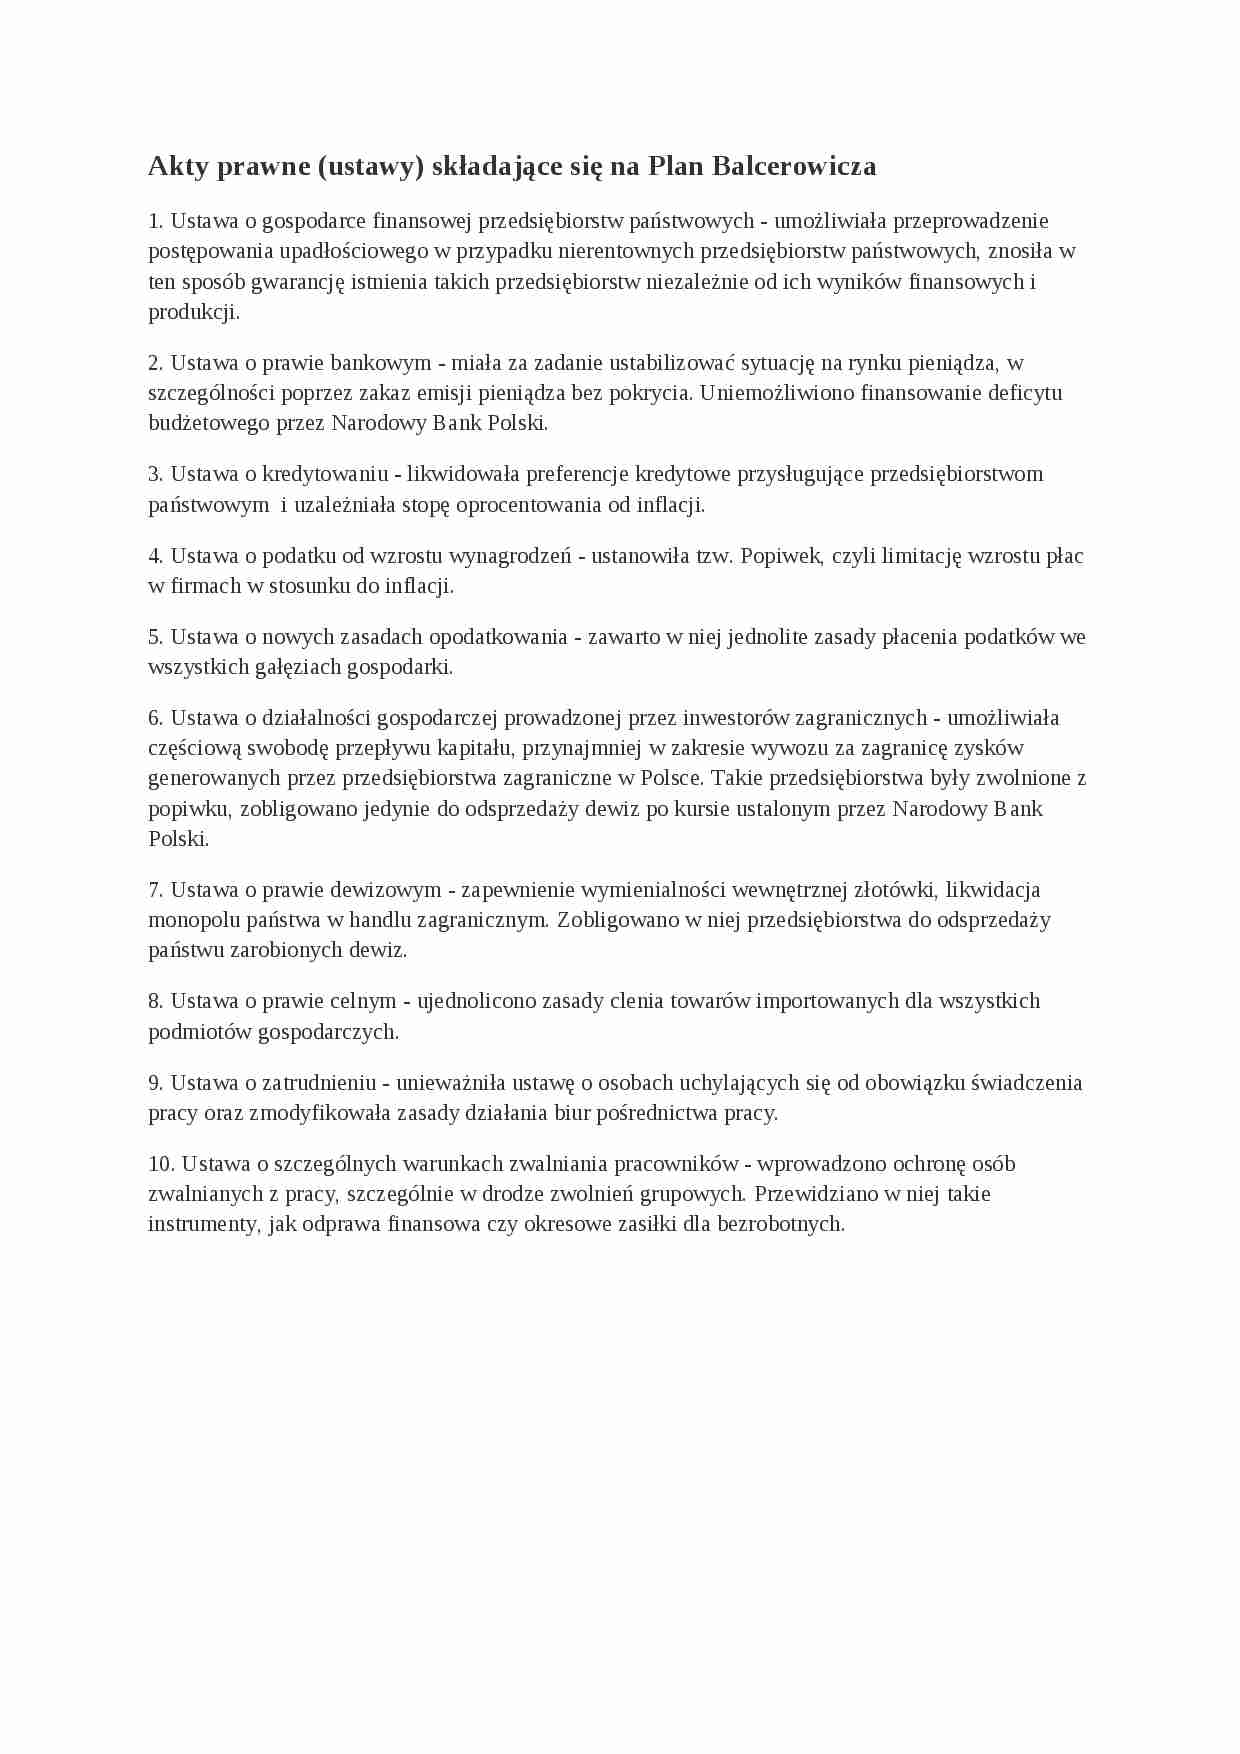 Akty prawne składające się na Plan Balcerowicza- spis - strona 1